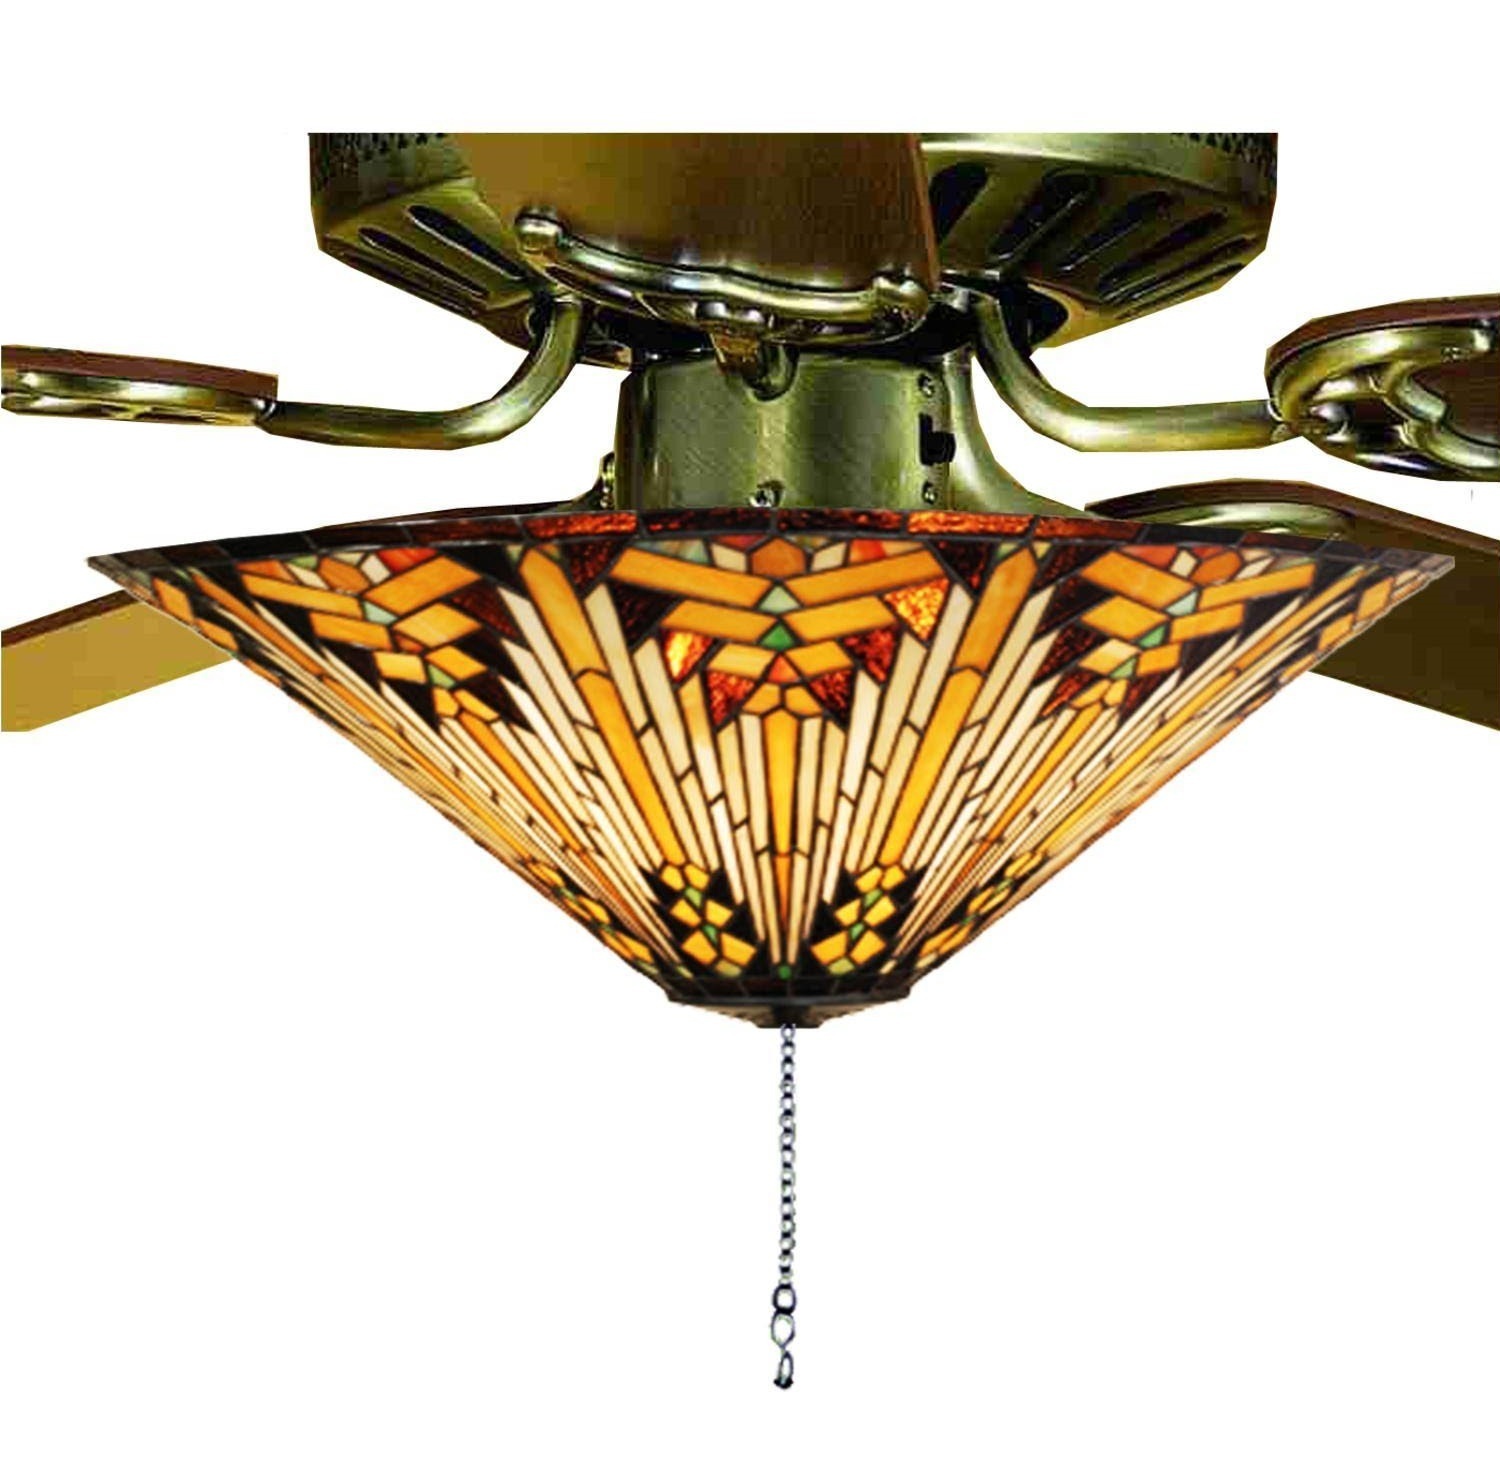 Tiffany crystal ceiling fan light kit